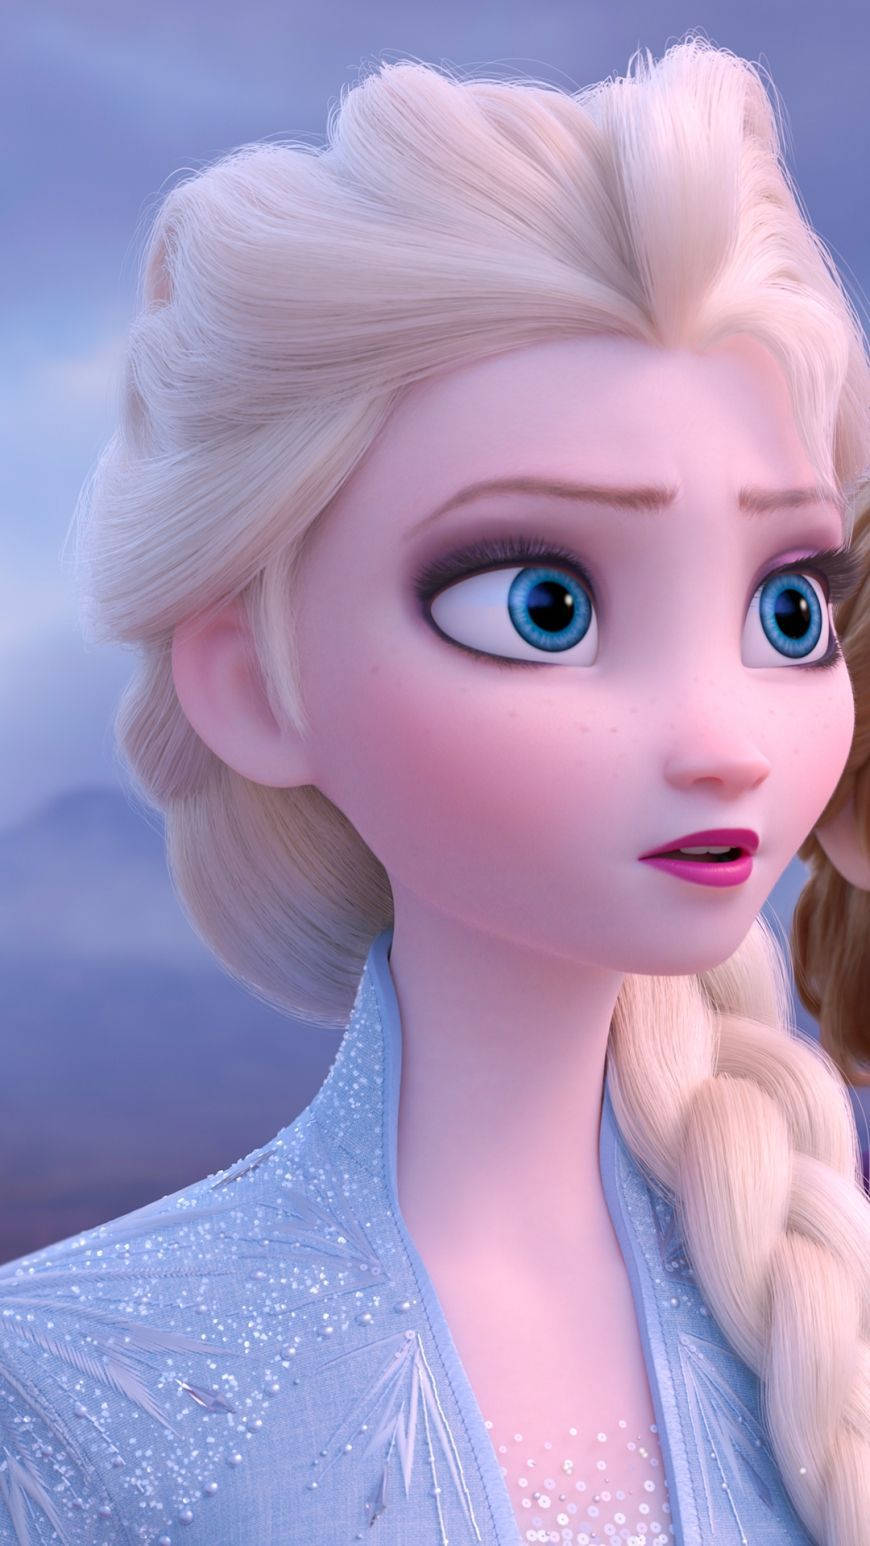 Queen Of Arendelle Frozen 2 Background